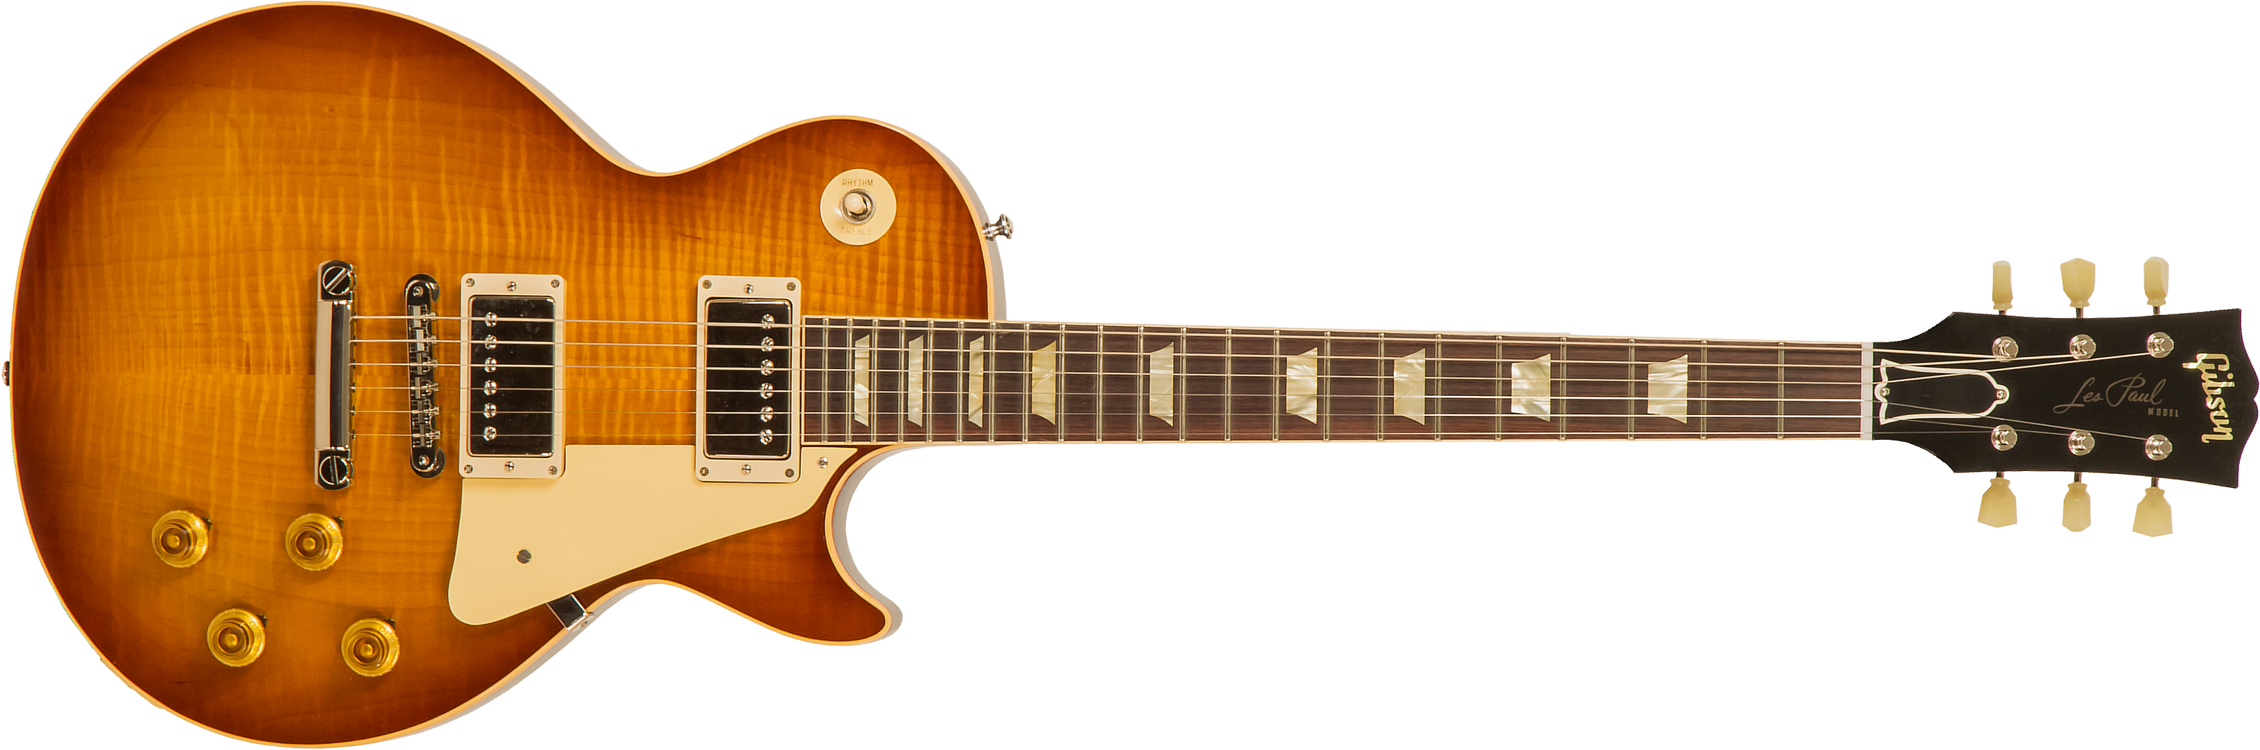 Gibson Custom Shop Standard Historic Les Paul Standard 1959 2h Ht Rw - Gloss Lemonburst - Guitarra eléctrica de corte único. - Main picture